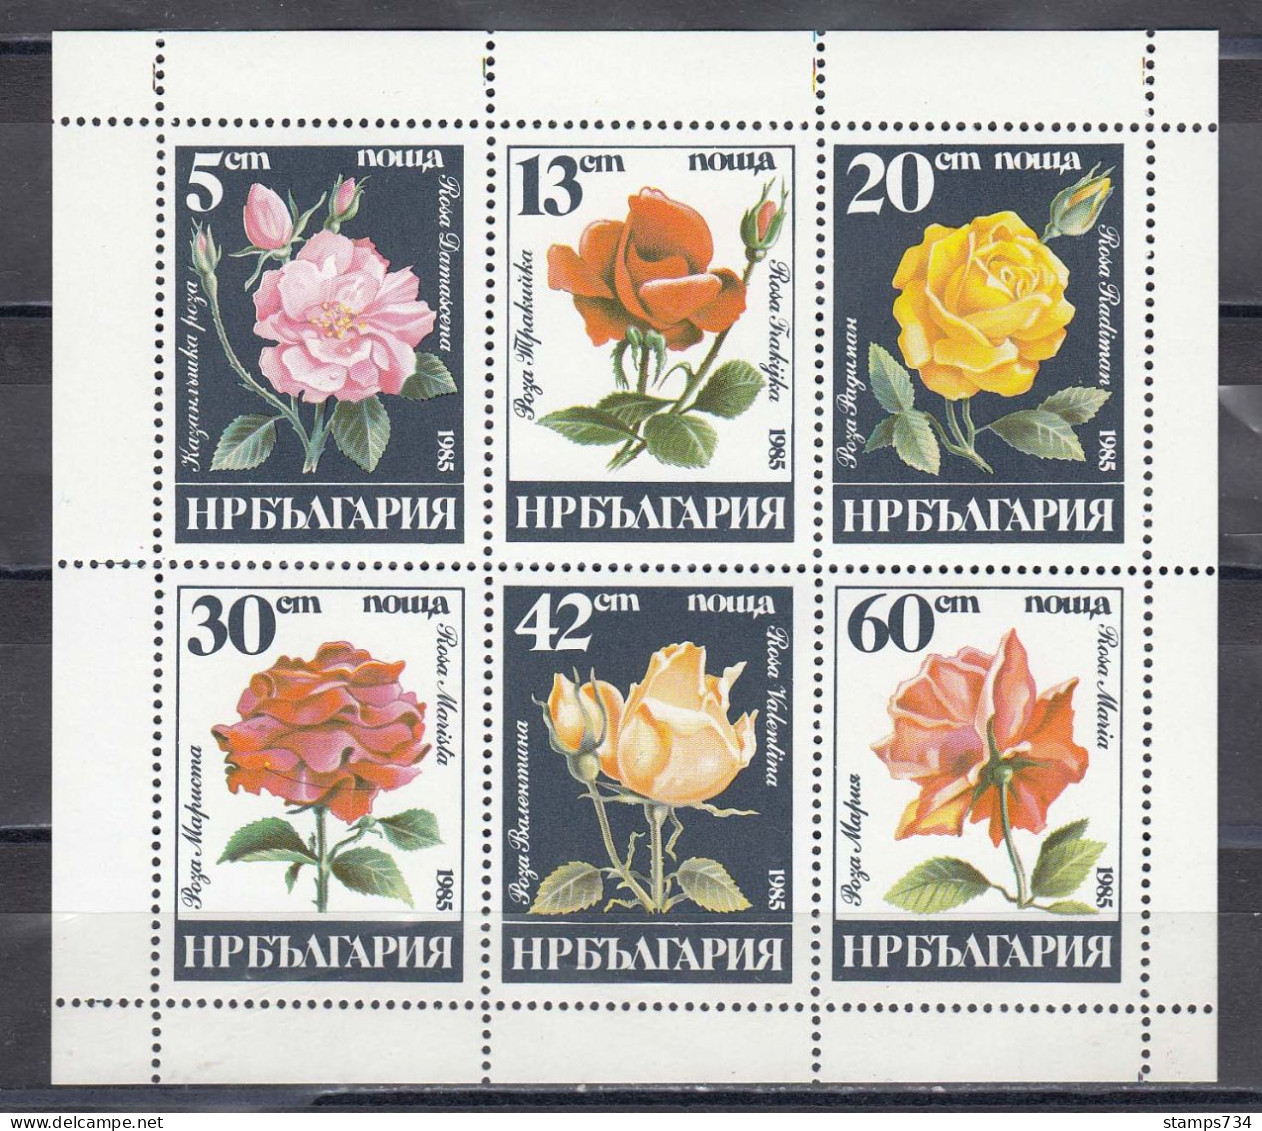 Bulgaria 1985 - Roses, Mi-Nr. 3373/78 In Sheet, MNH** - Nuevos